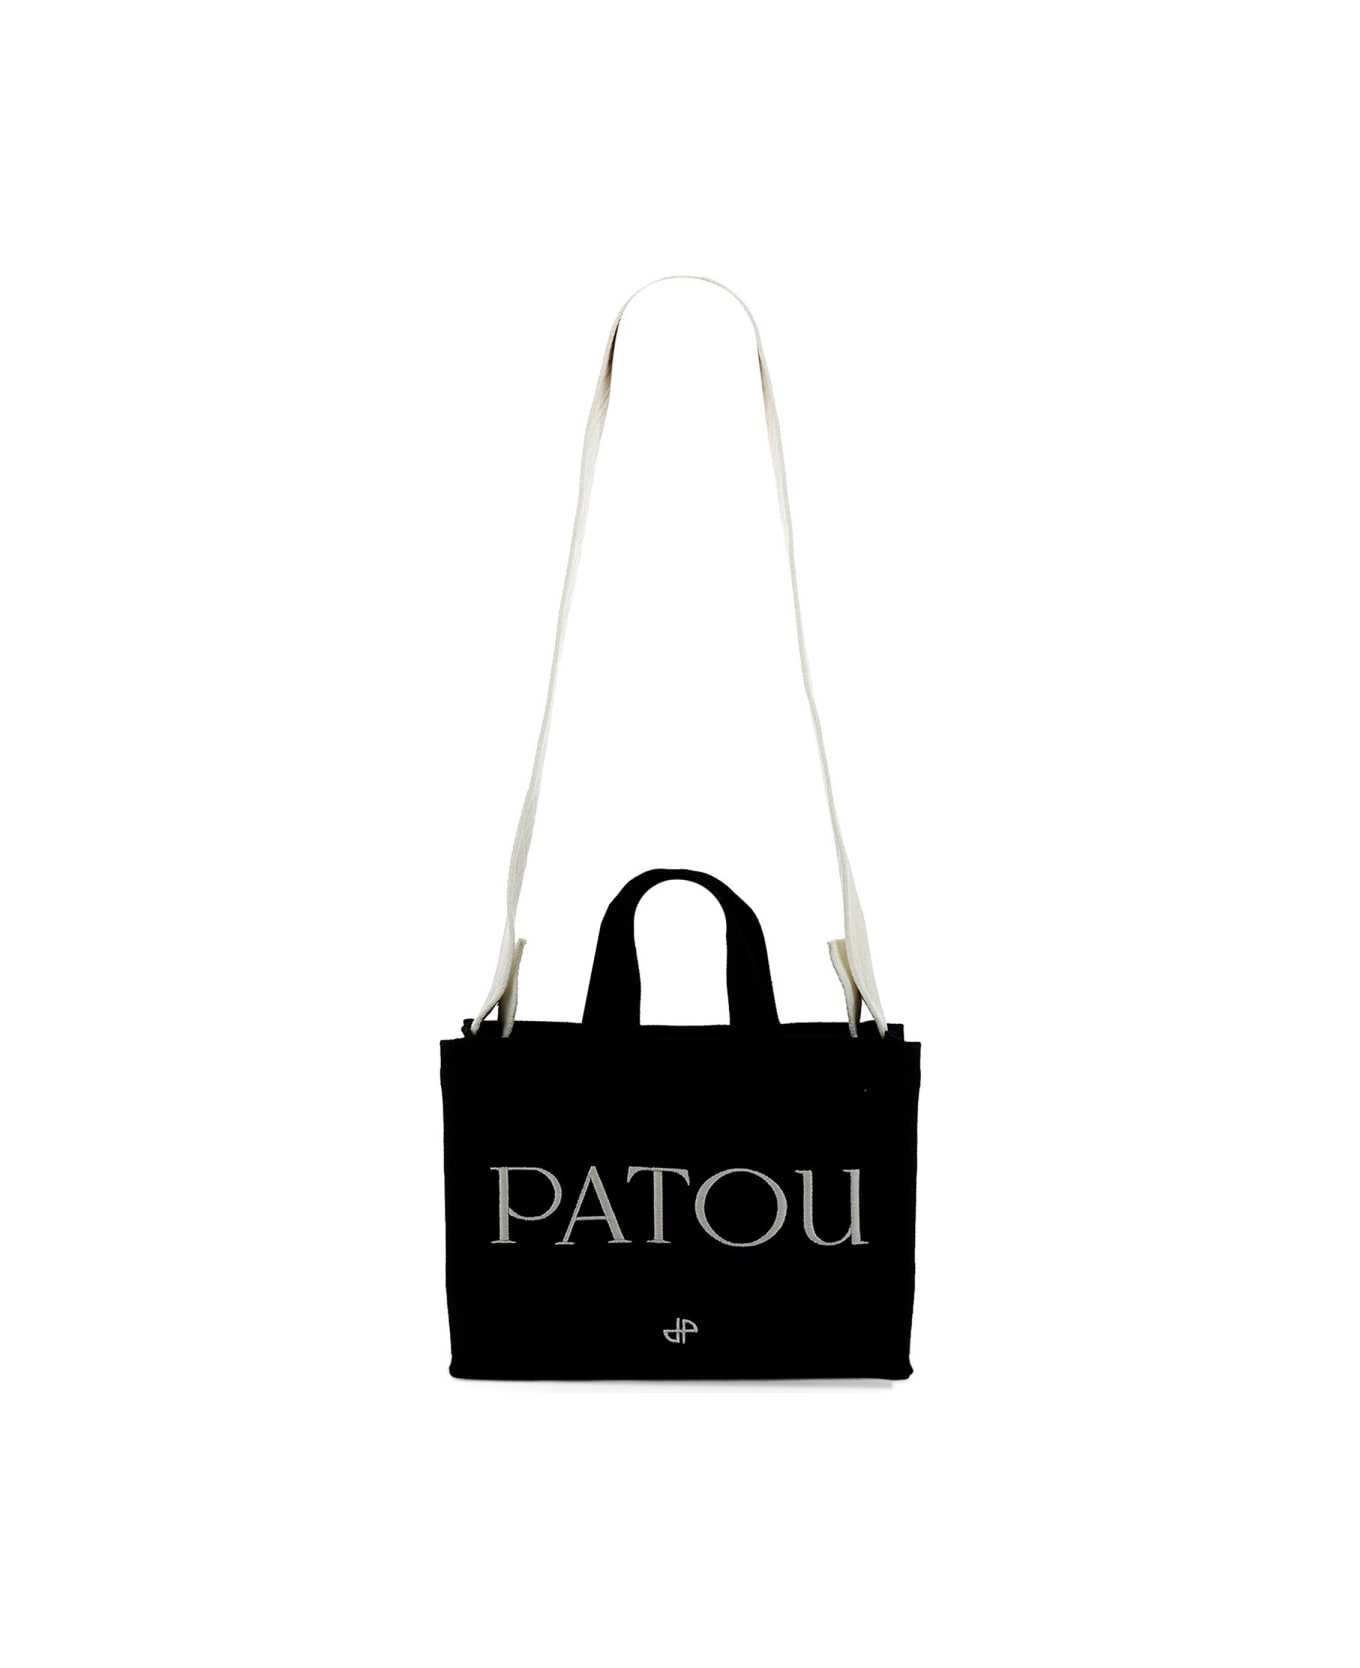 Patou Small "patou" Tote Bag - BLACK